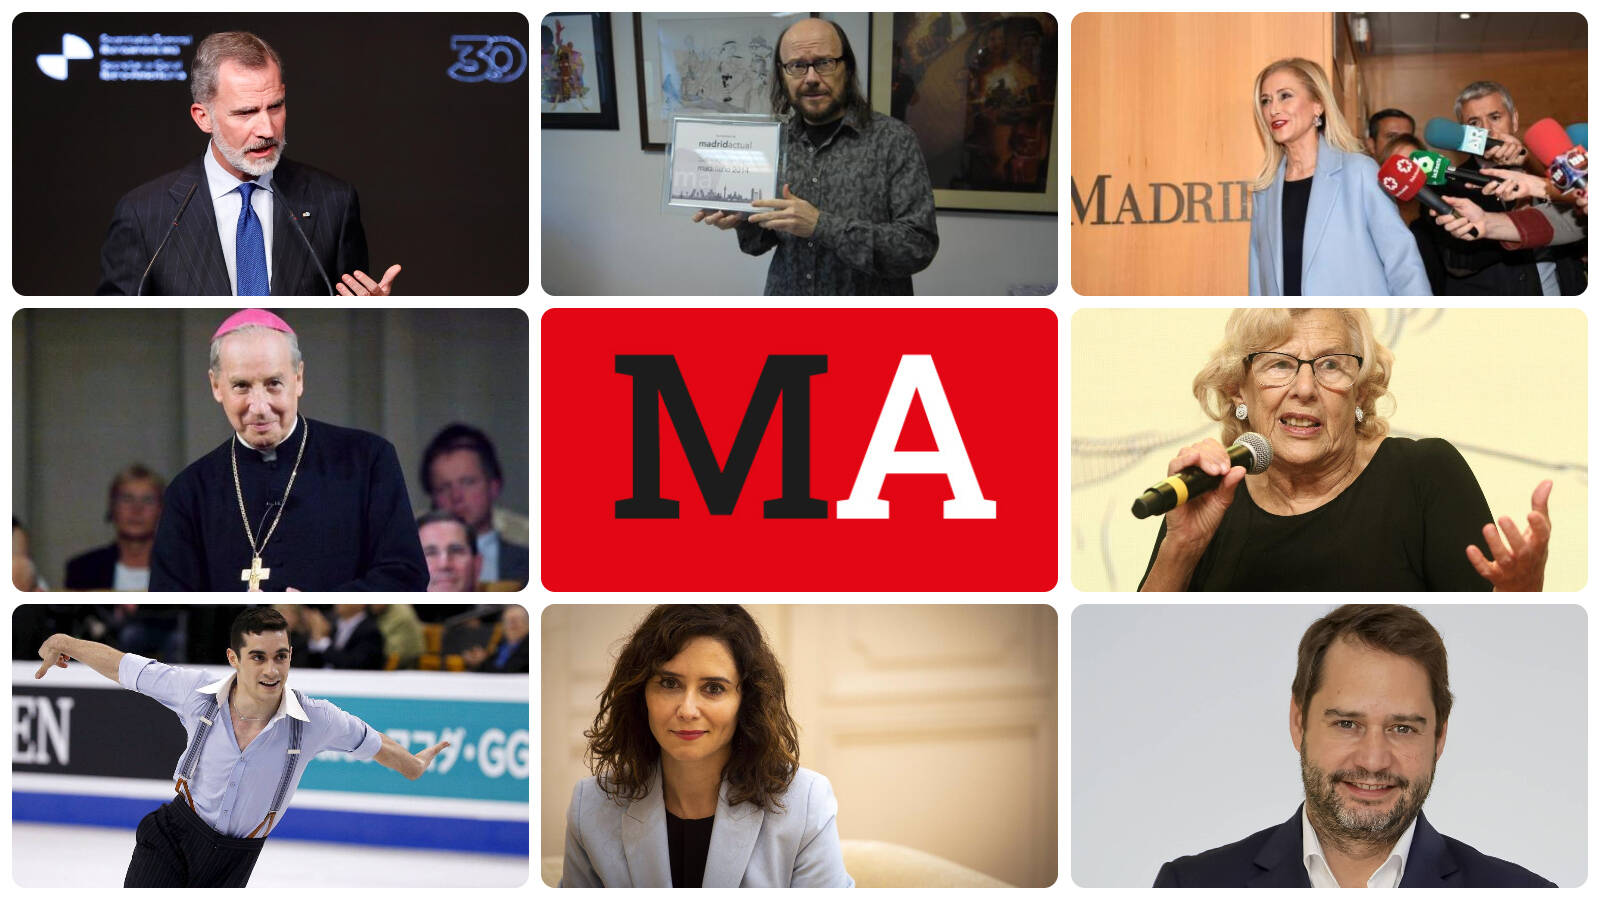 ¿Quién es para ti el Premio Madrid Actual 2022? Propón tu candidato